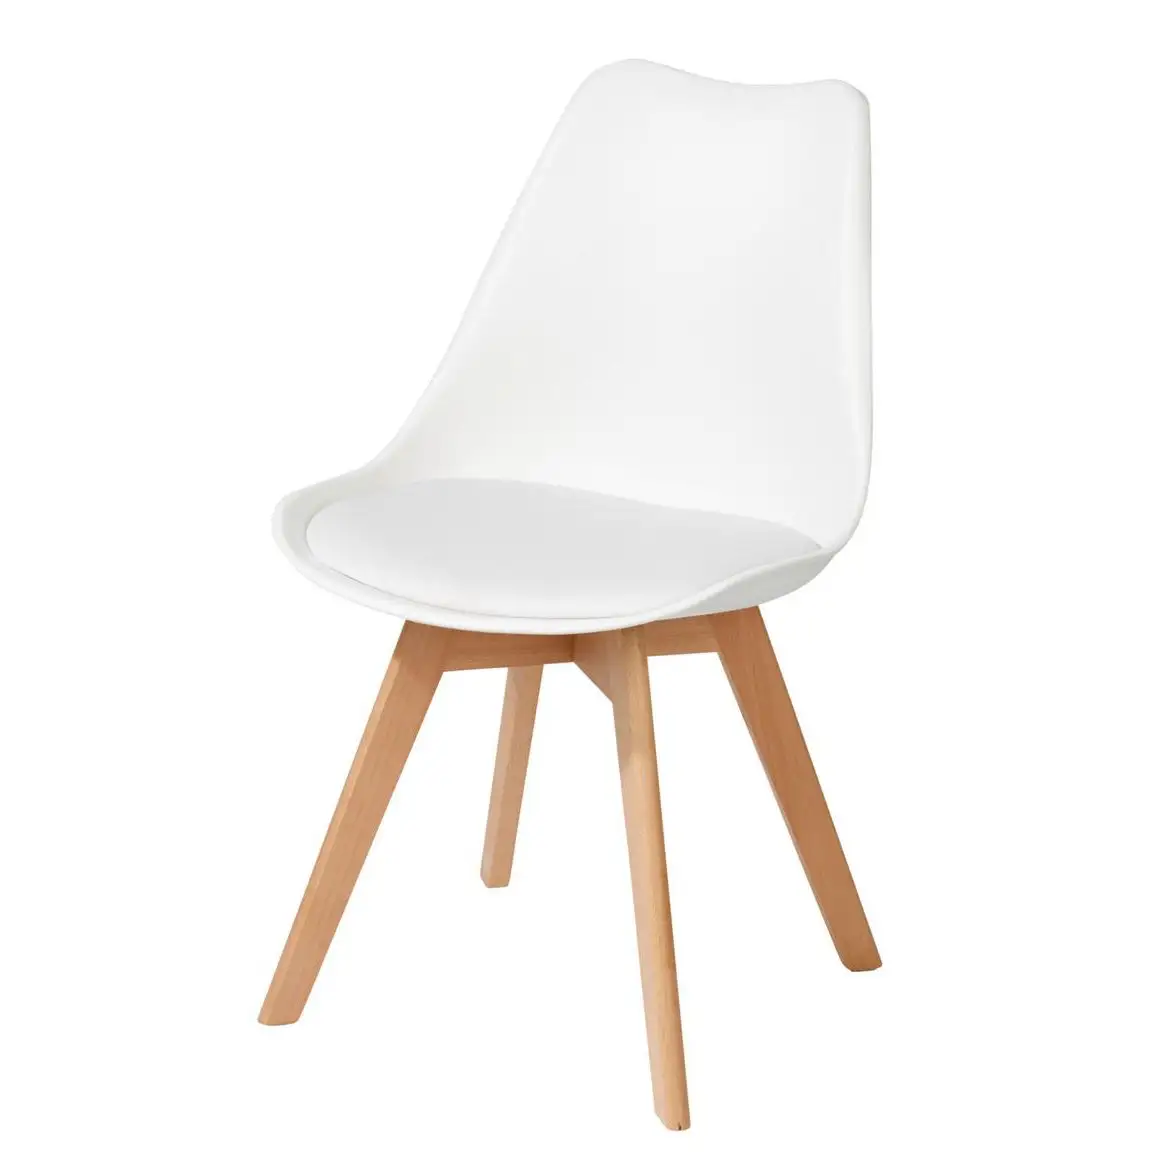 Conception populaire en gros artisanat moderne Outlook bambou canne accoudoir chaise pour salon Patio intérieur extérieur en vrac